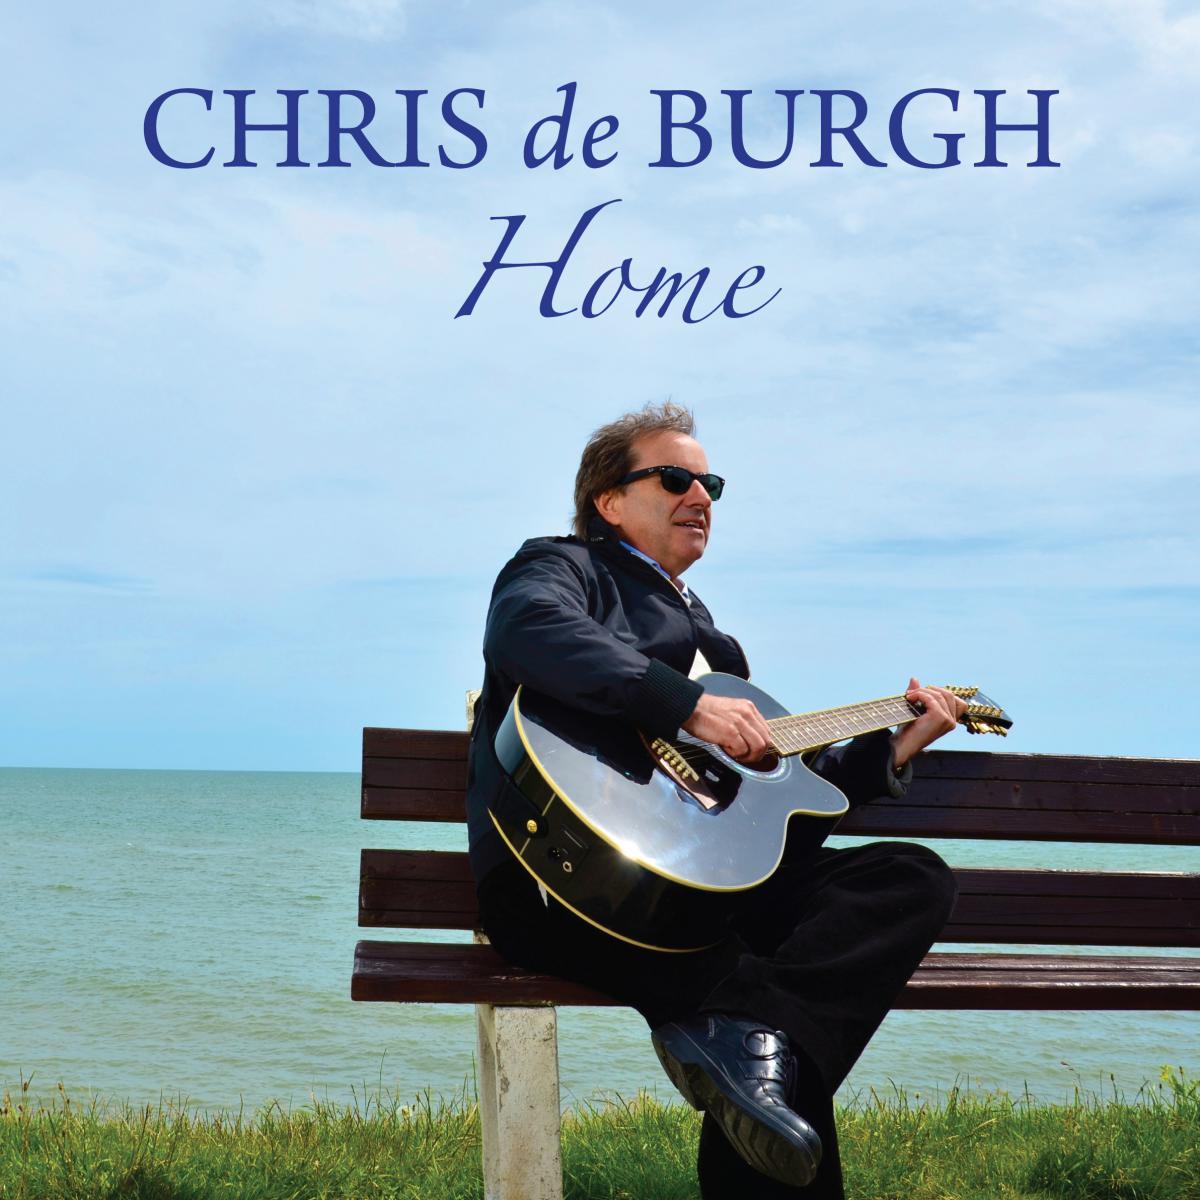 Chris de Burgh liefert mit “Home” eine Retrospektive der ganz besonderen Art